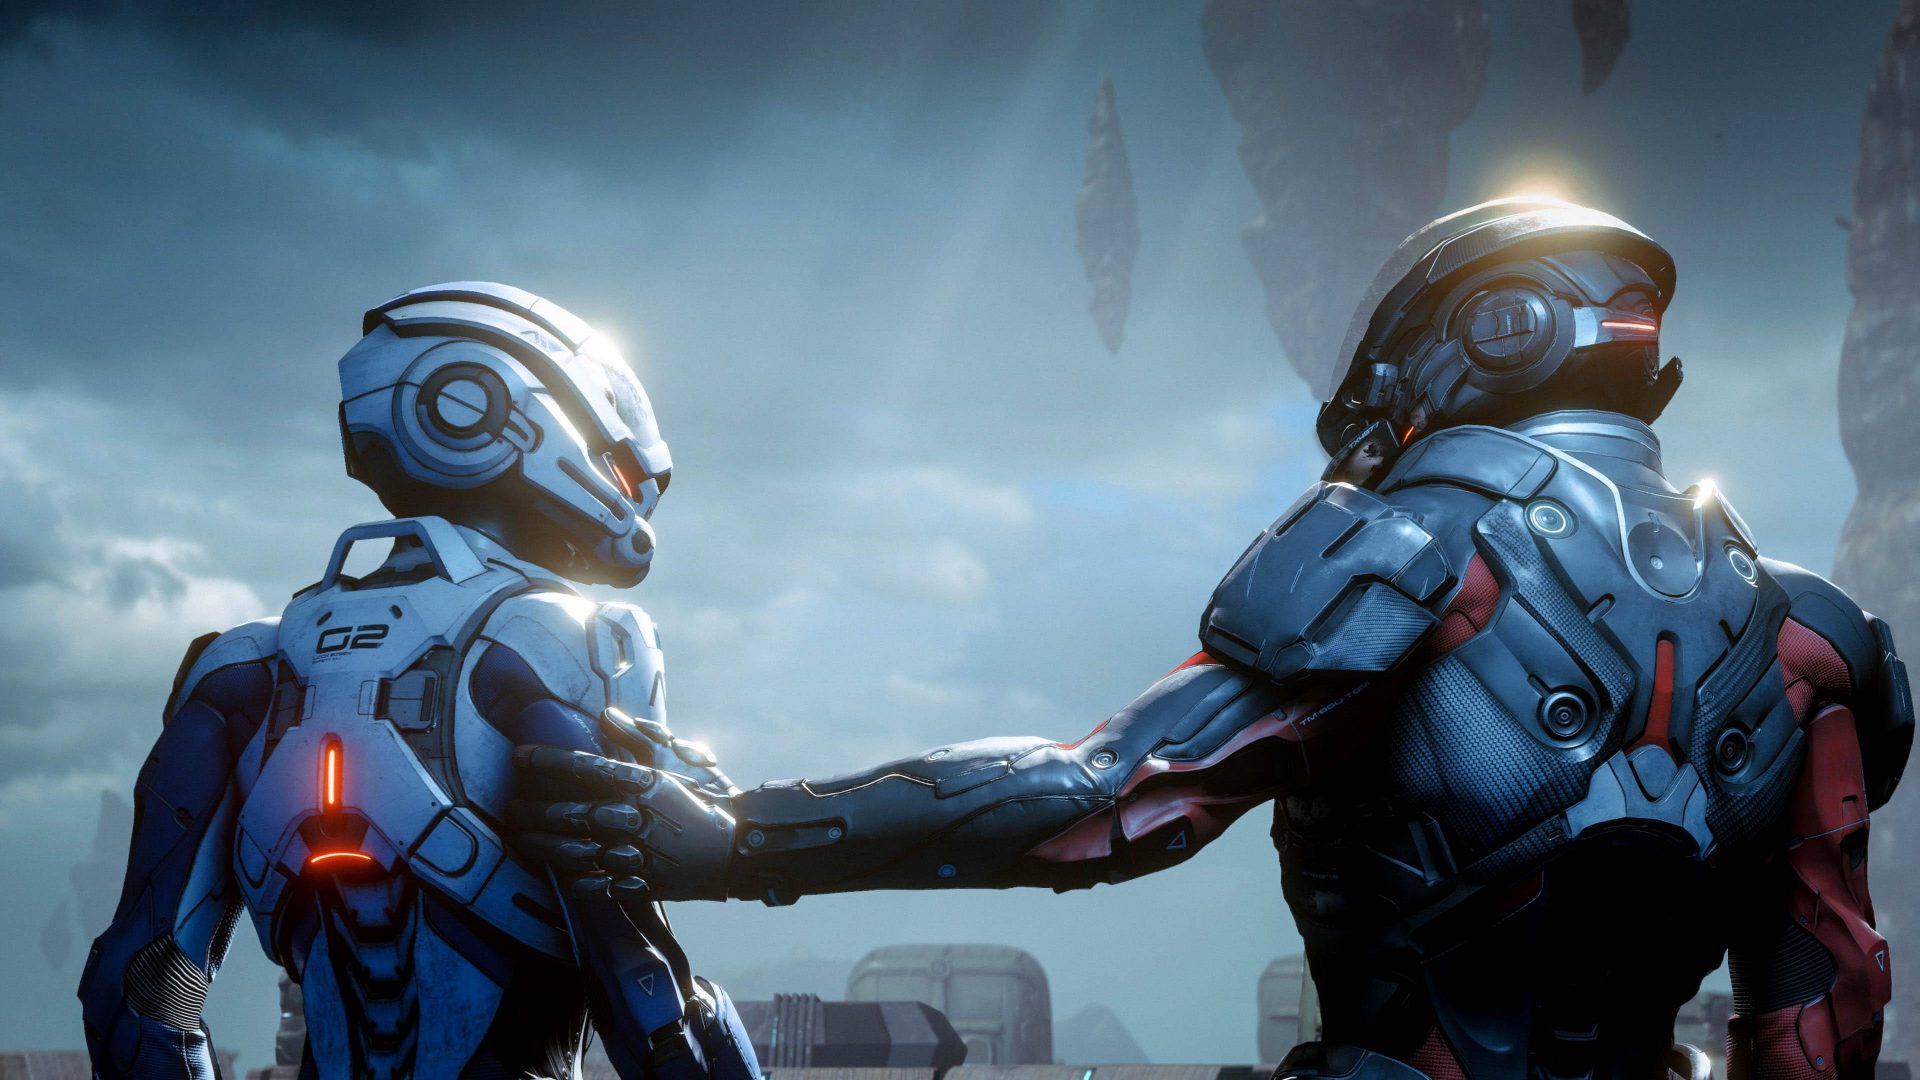 คงได้พบกันอีก โปรเจกต์ Mass Effect ภาคต่อถูกพับเข้ากรุไร้กำหนดการนำกลับมาพัฒนา